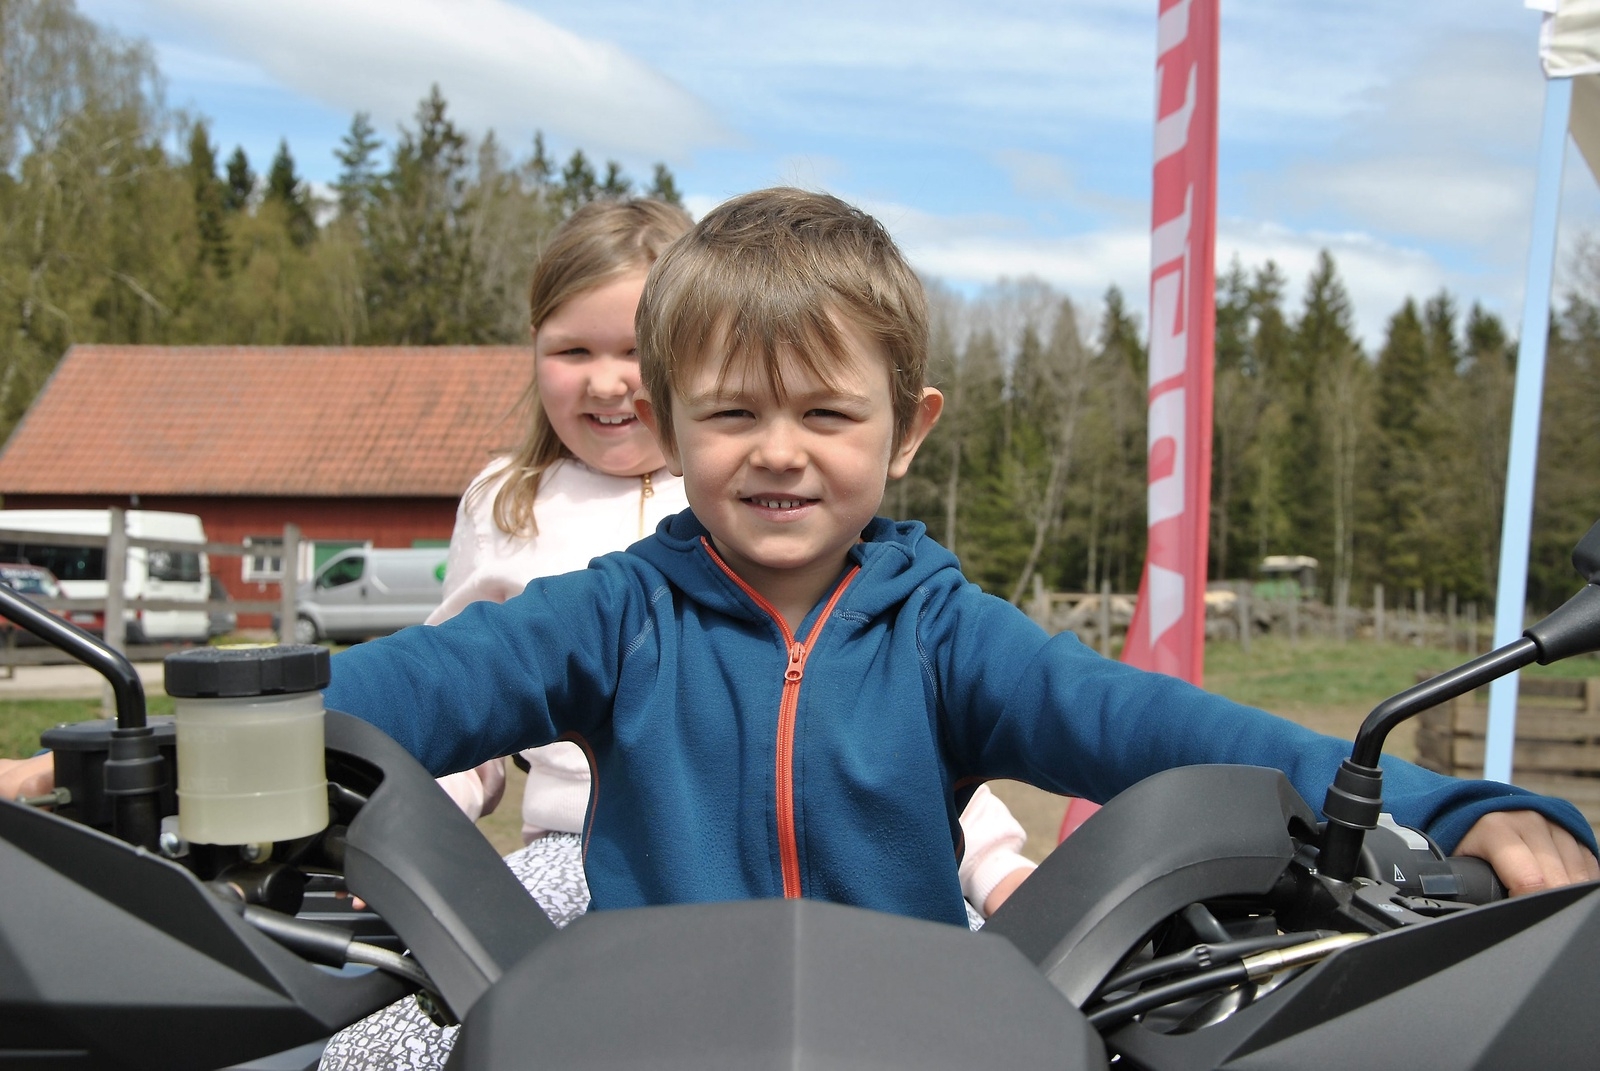 Olof Nilsson testade en ATV tillsammans med sin granne Maja Nilsson.